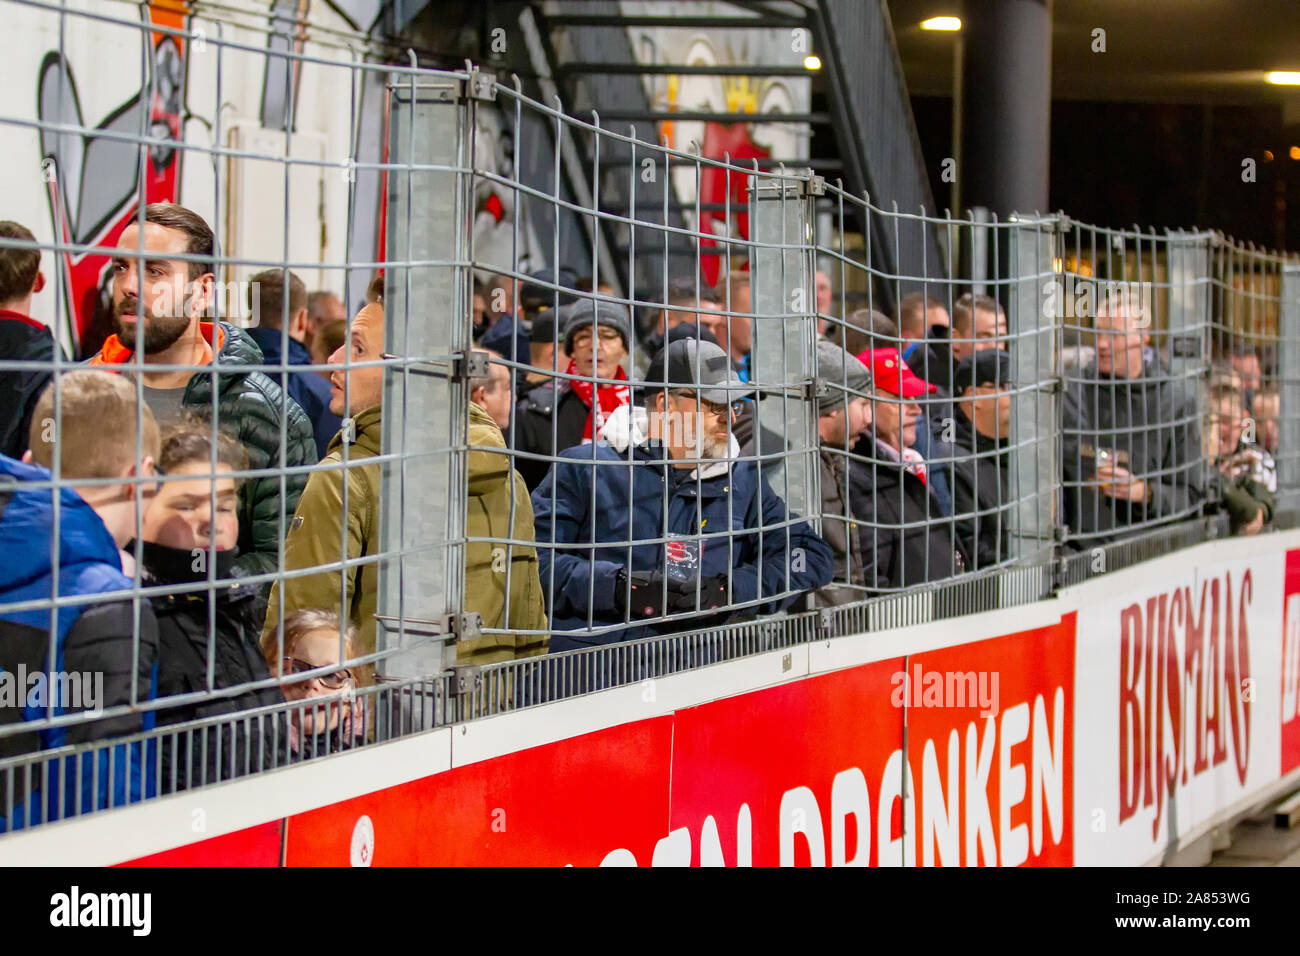 1 novembre 2019 Maastricht, pays-Bas Soccer Néerlandais Keuken Kampioen Divisiie Almere City FC v MVV Maastricht KKD 2019-2020 Toeschouwers blijven democtief in de grachten staan (daar waar dat verboden is) en weigeren de tribunes op te gaan. Banque D'Images